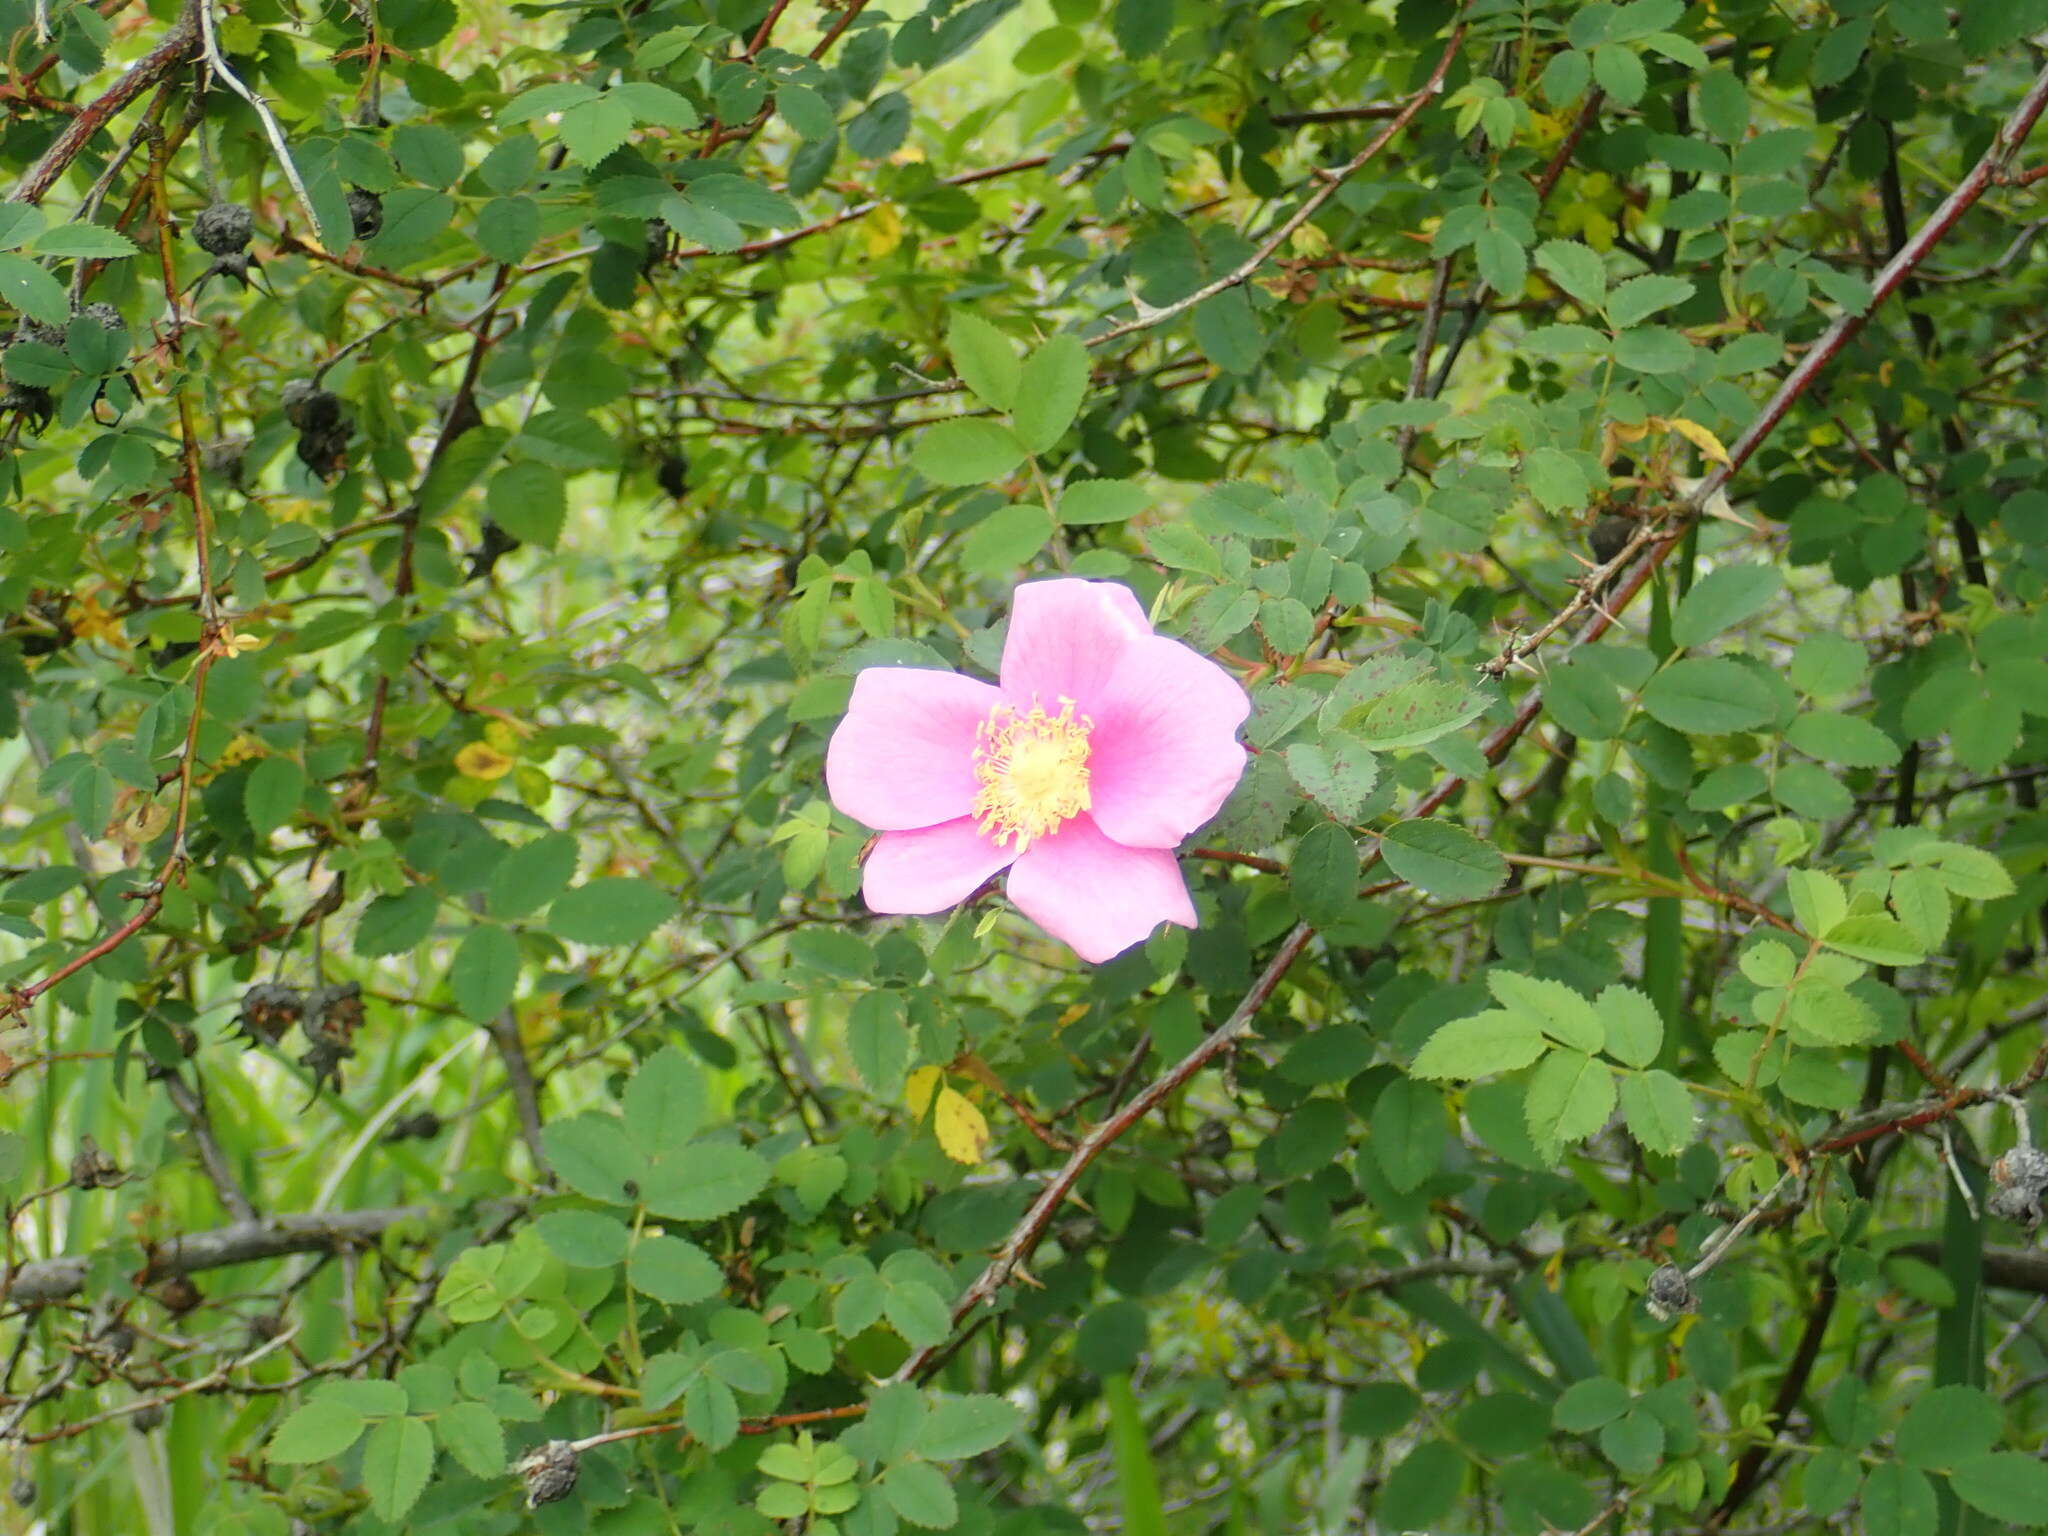 Image of Nootka rose